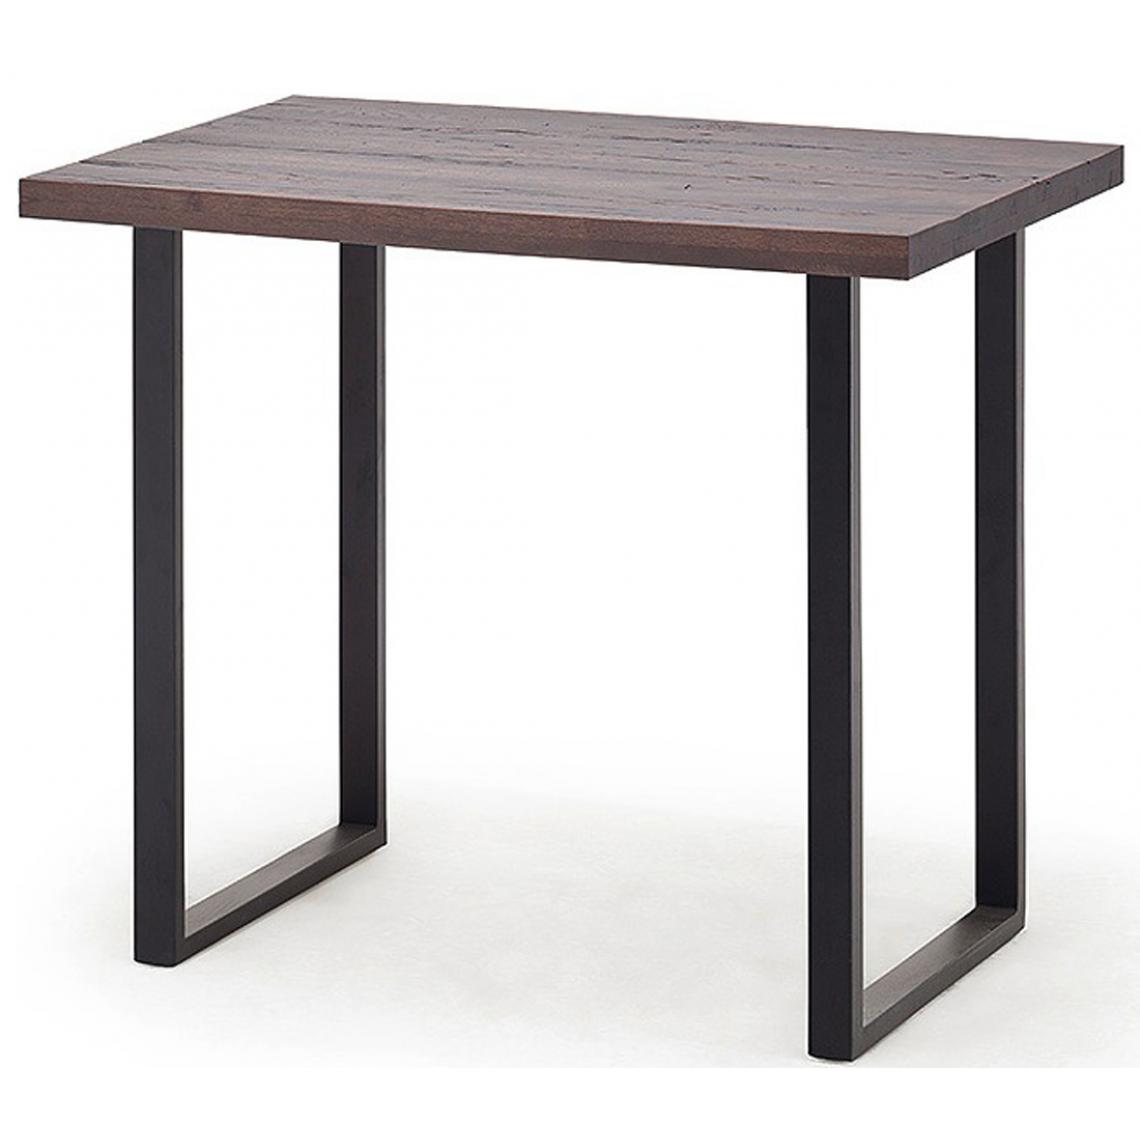 Pegane - Table haute en chêne tanner et métal laqué anthracite - Longueur 120 x Hauteur 107 x Profondeur 80 cm - Tables à manger